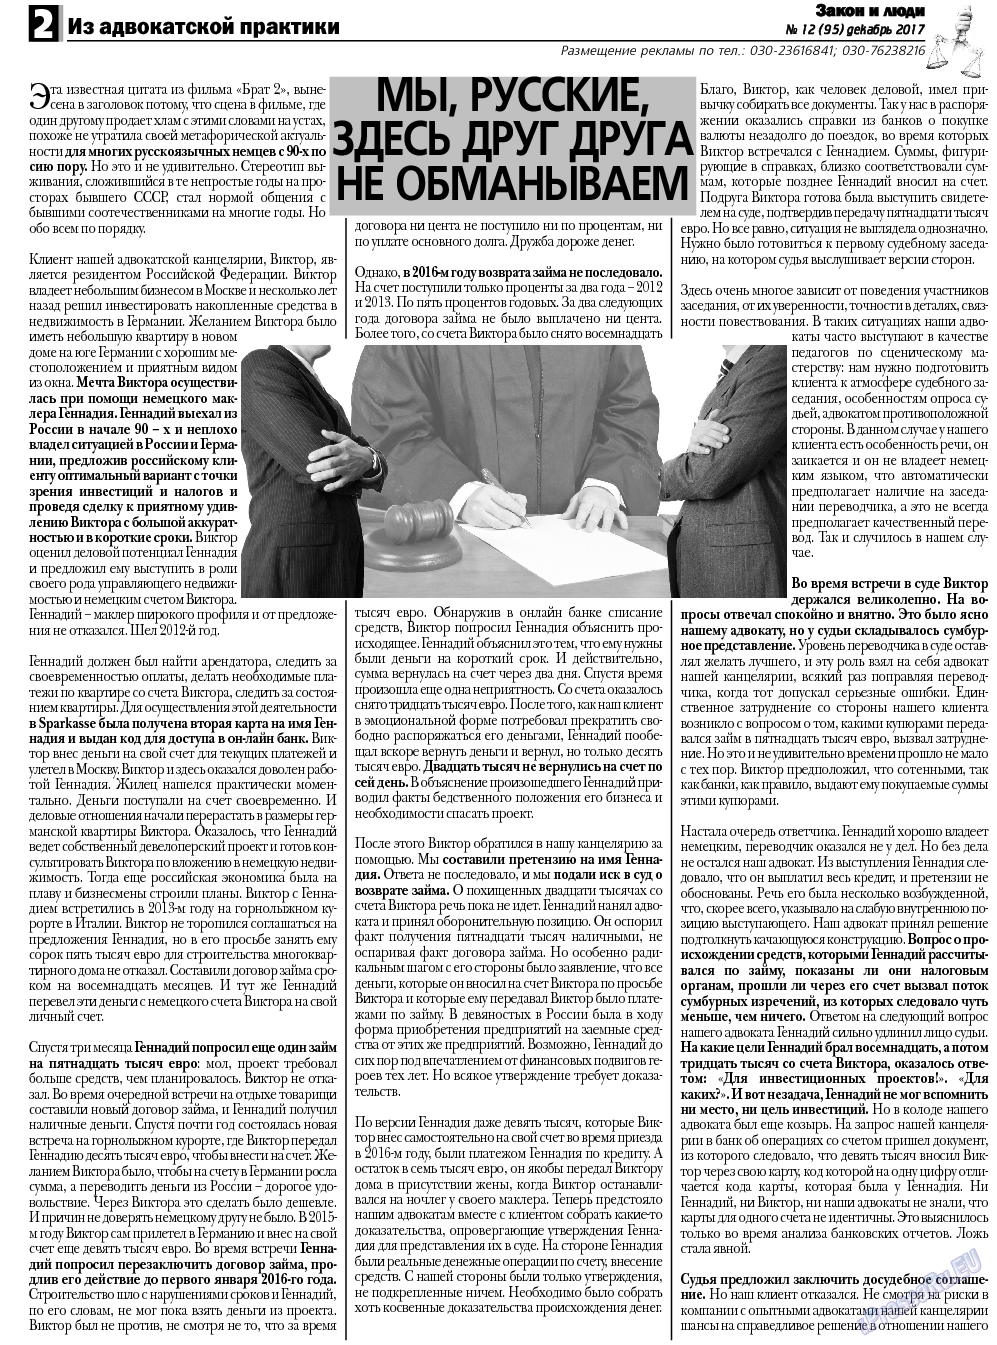 Закон и люди, газета. 2017 №12 стр.2